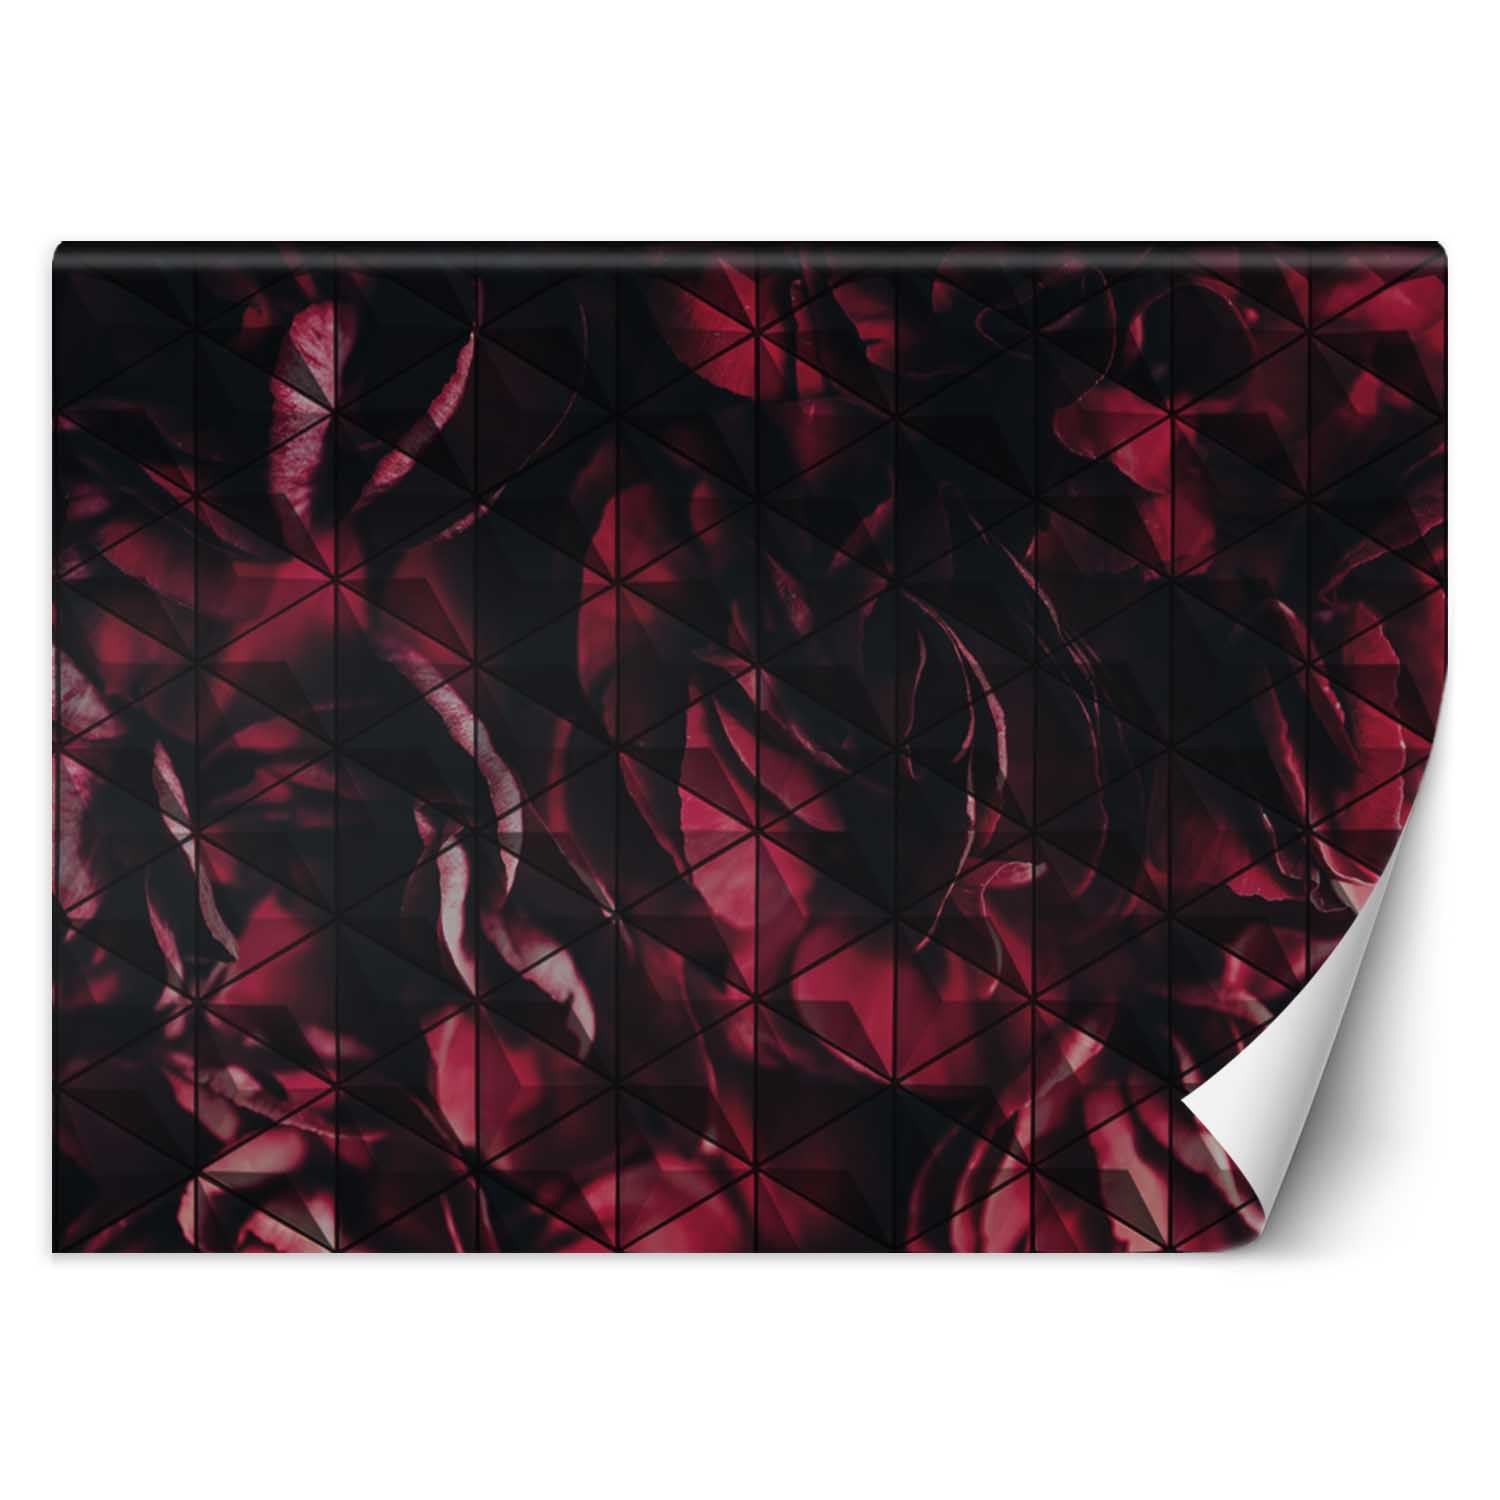 Trend24 – Behang – Rode Bloemblaadjes – Vliesbehang – Behang Woonkamer – Fotobehang – 350x245x2 cm – Incl. behanglijm